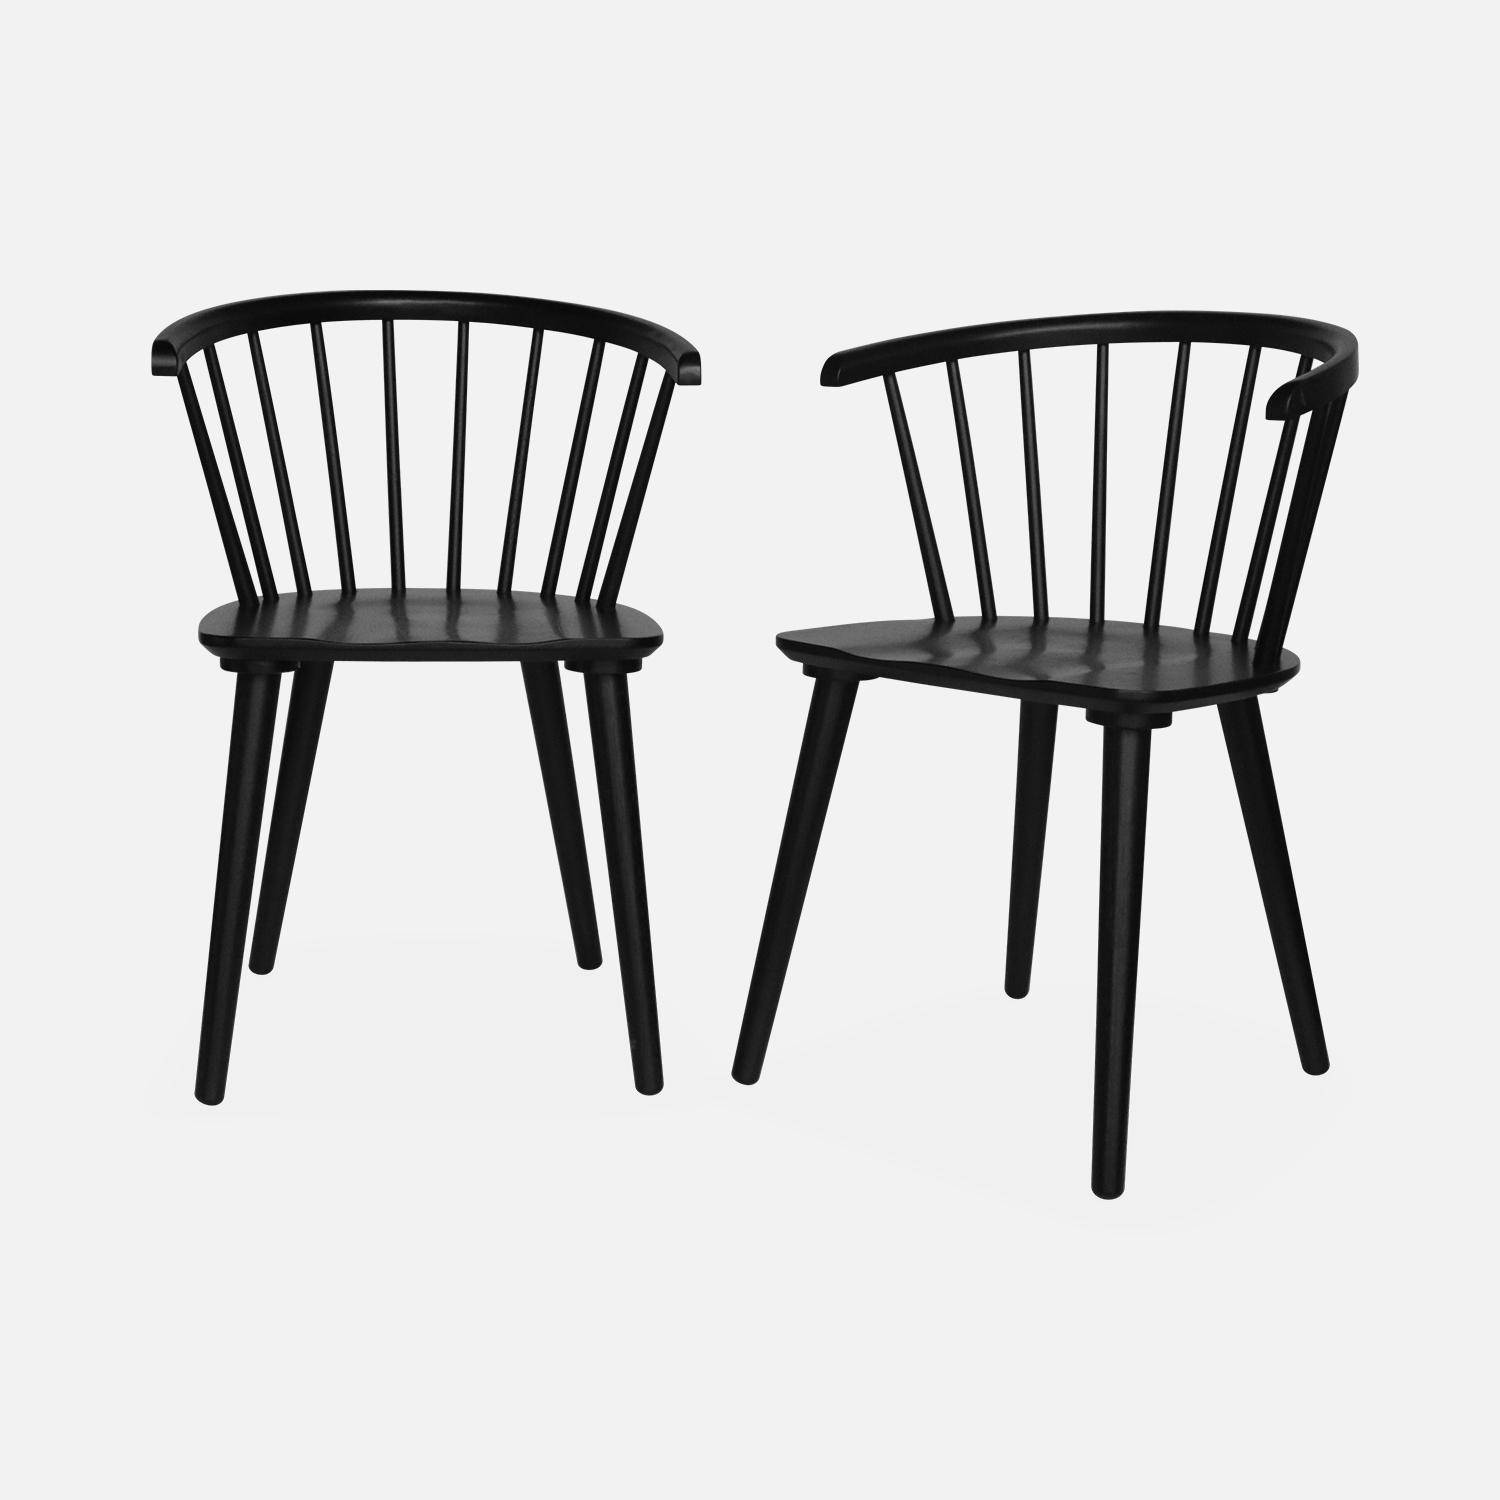 Juego de 2 sillas de bar de madera y contrachapado negro, Paula, An 51 x Pr 53 x Al 75cm,sweeek,Photo3